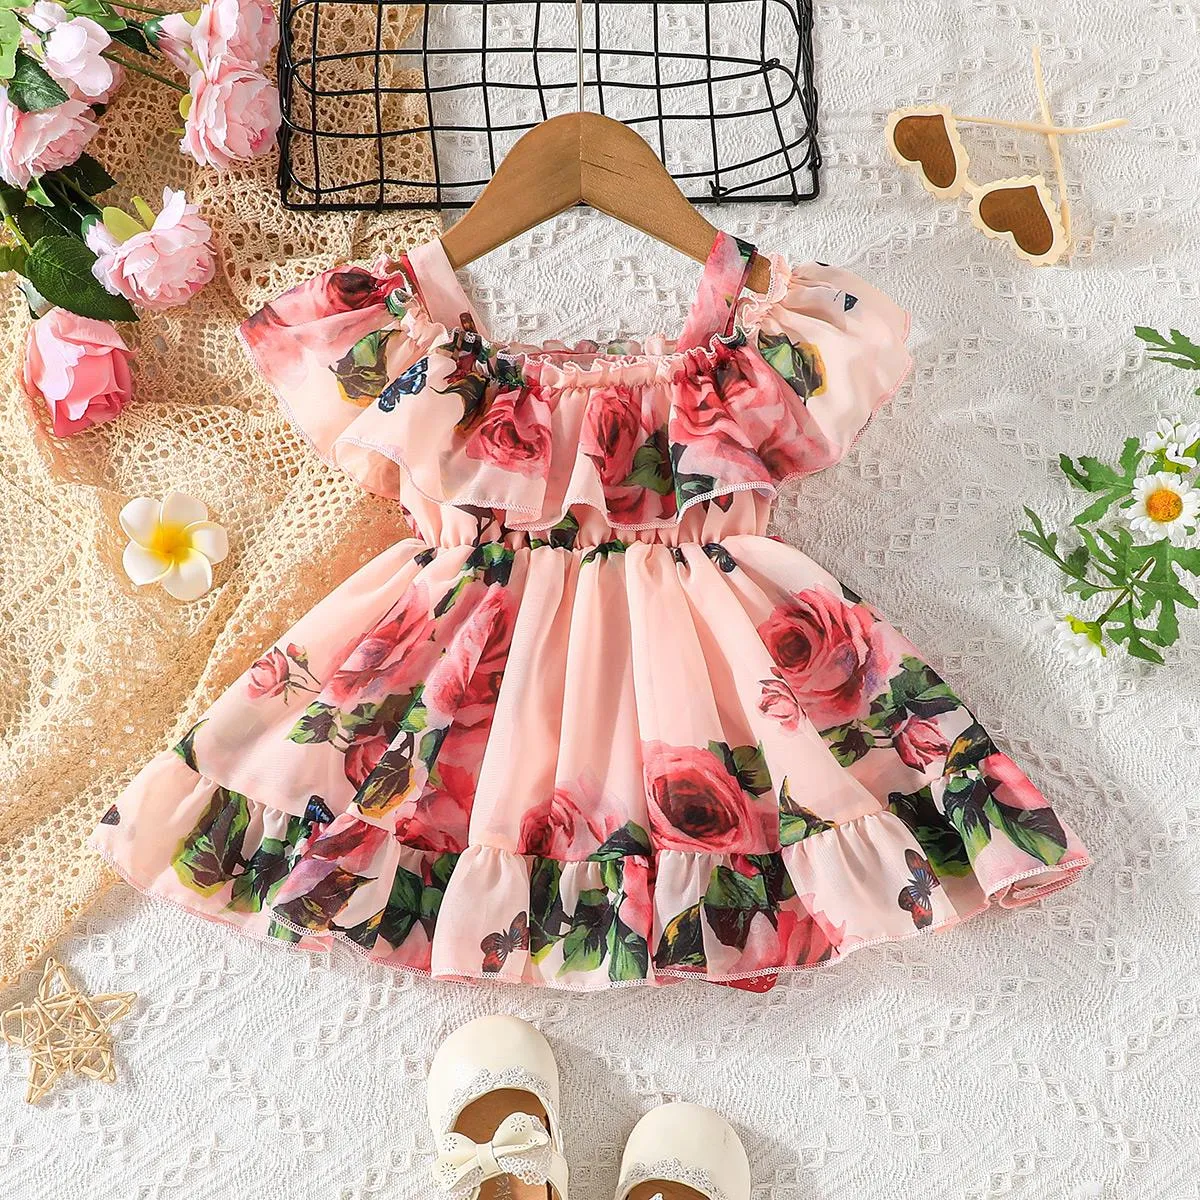 Buy Pink Floral Print Dresses Online for Sale - PatPat US